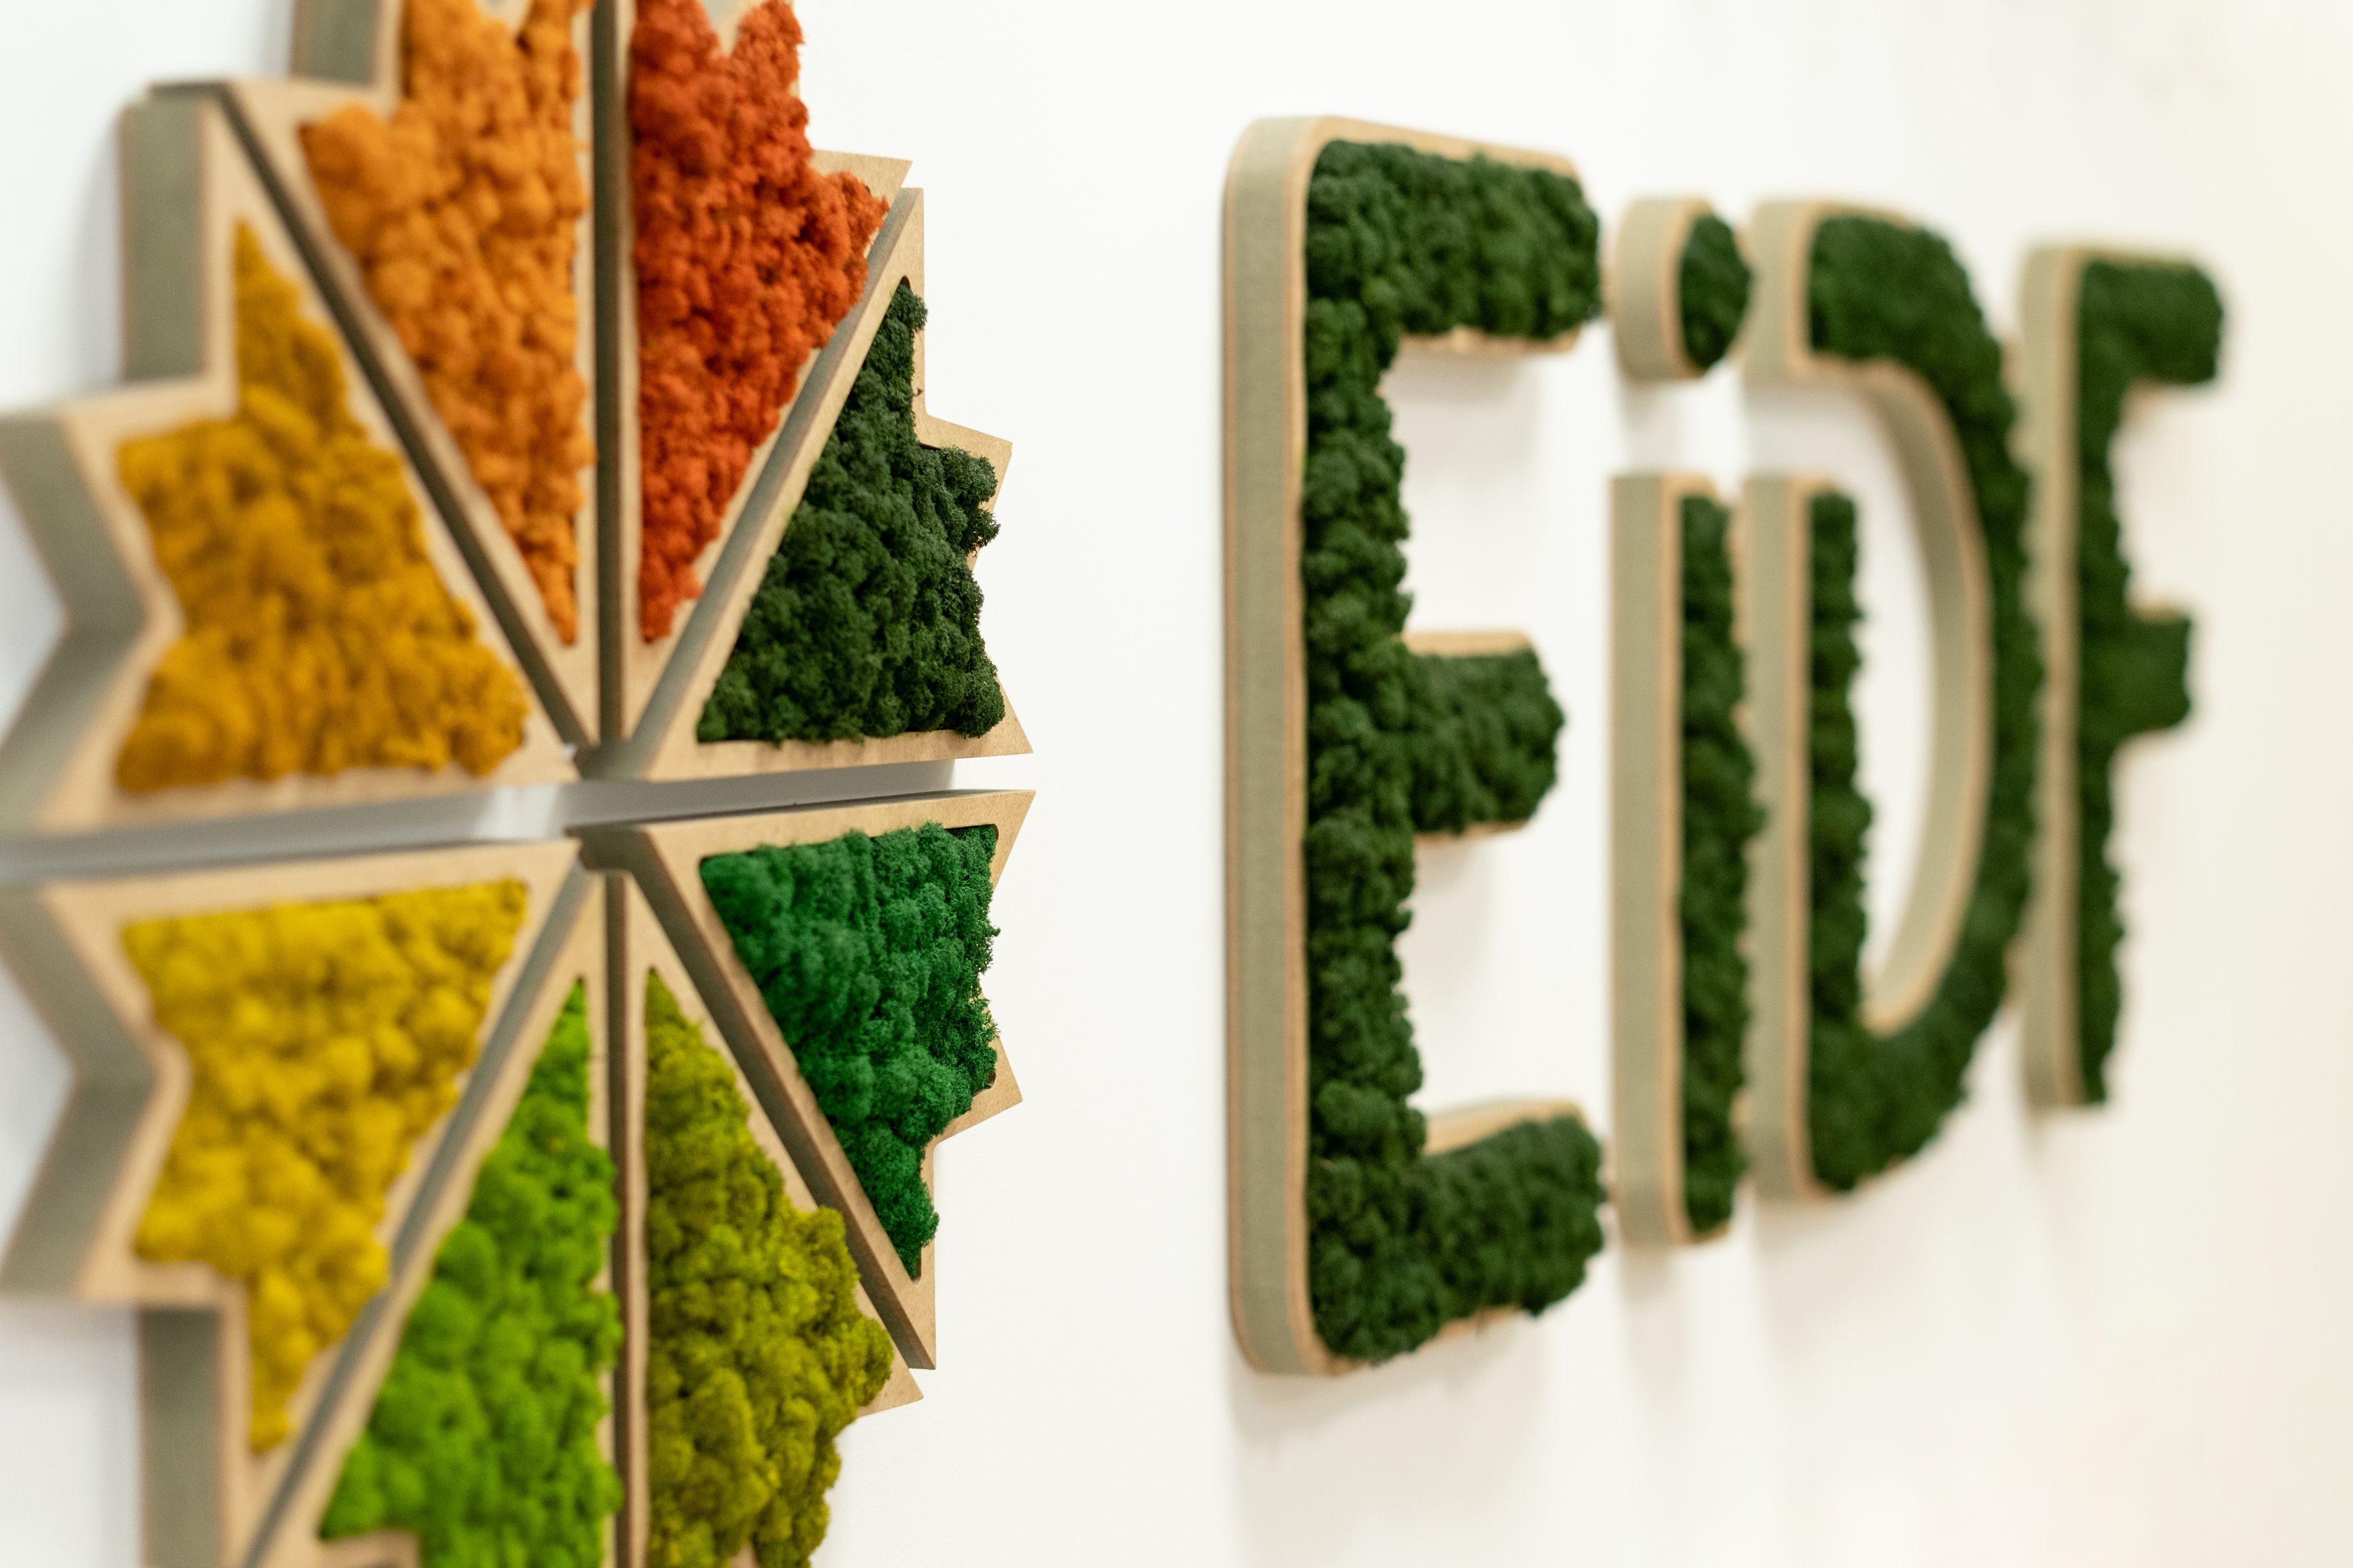 EiDF amortiza 8,1 millones en pagarés y suscribe nuevos pagarés por 10,7 millones